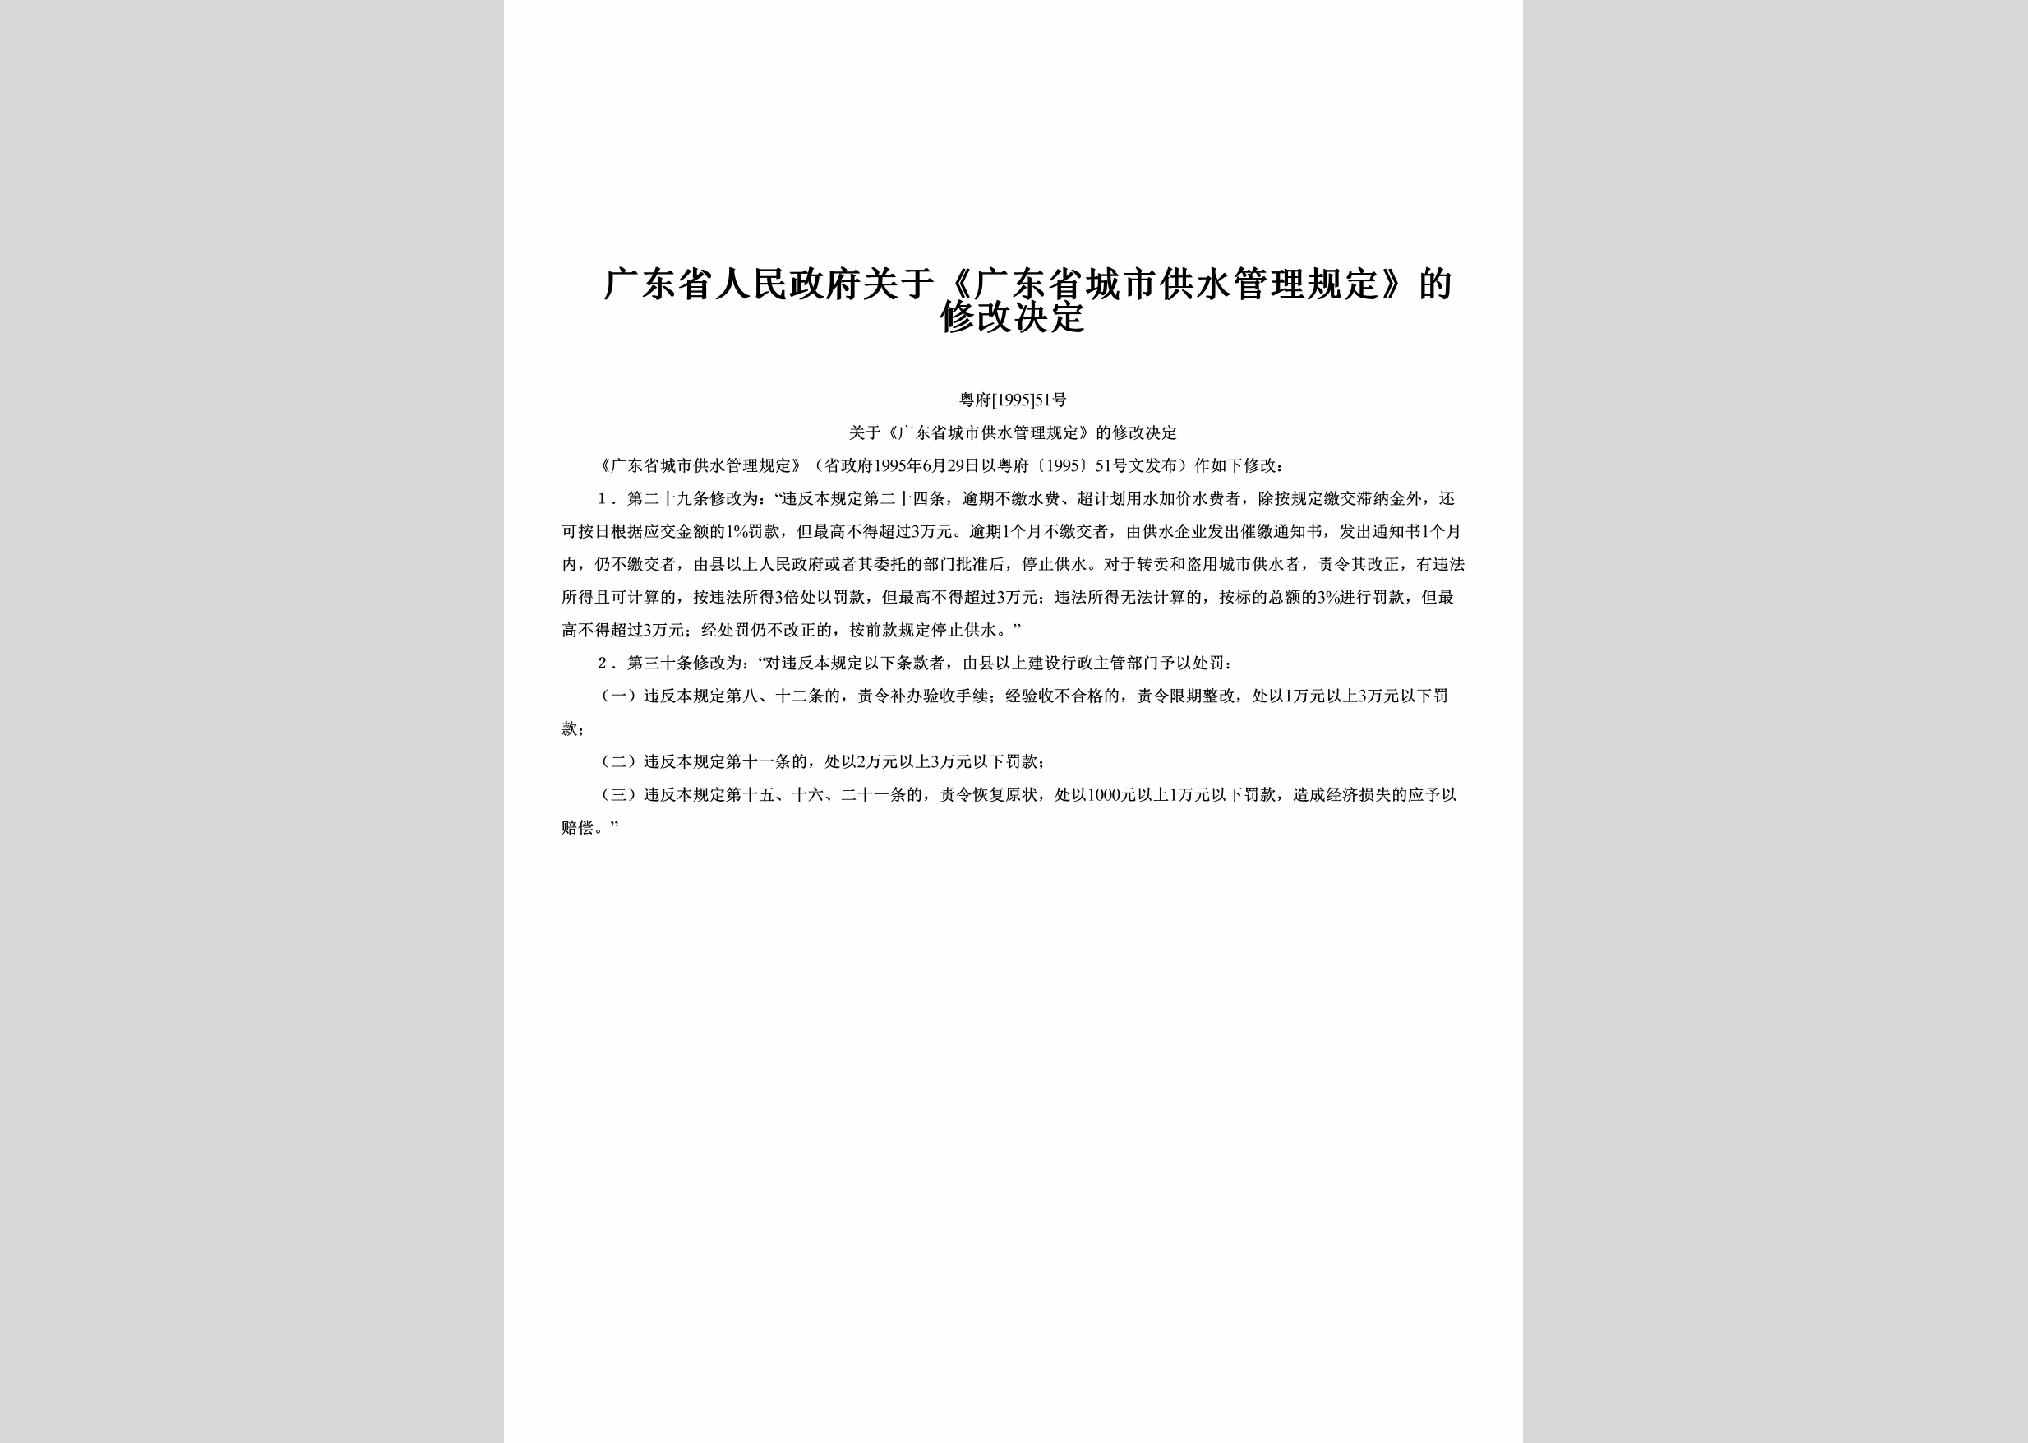 粤府[1995]51号：关于《广东省城市供水管理规定》的修改决定